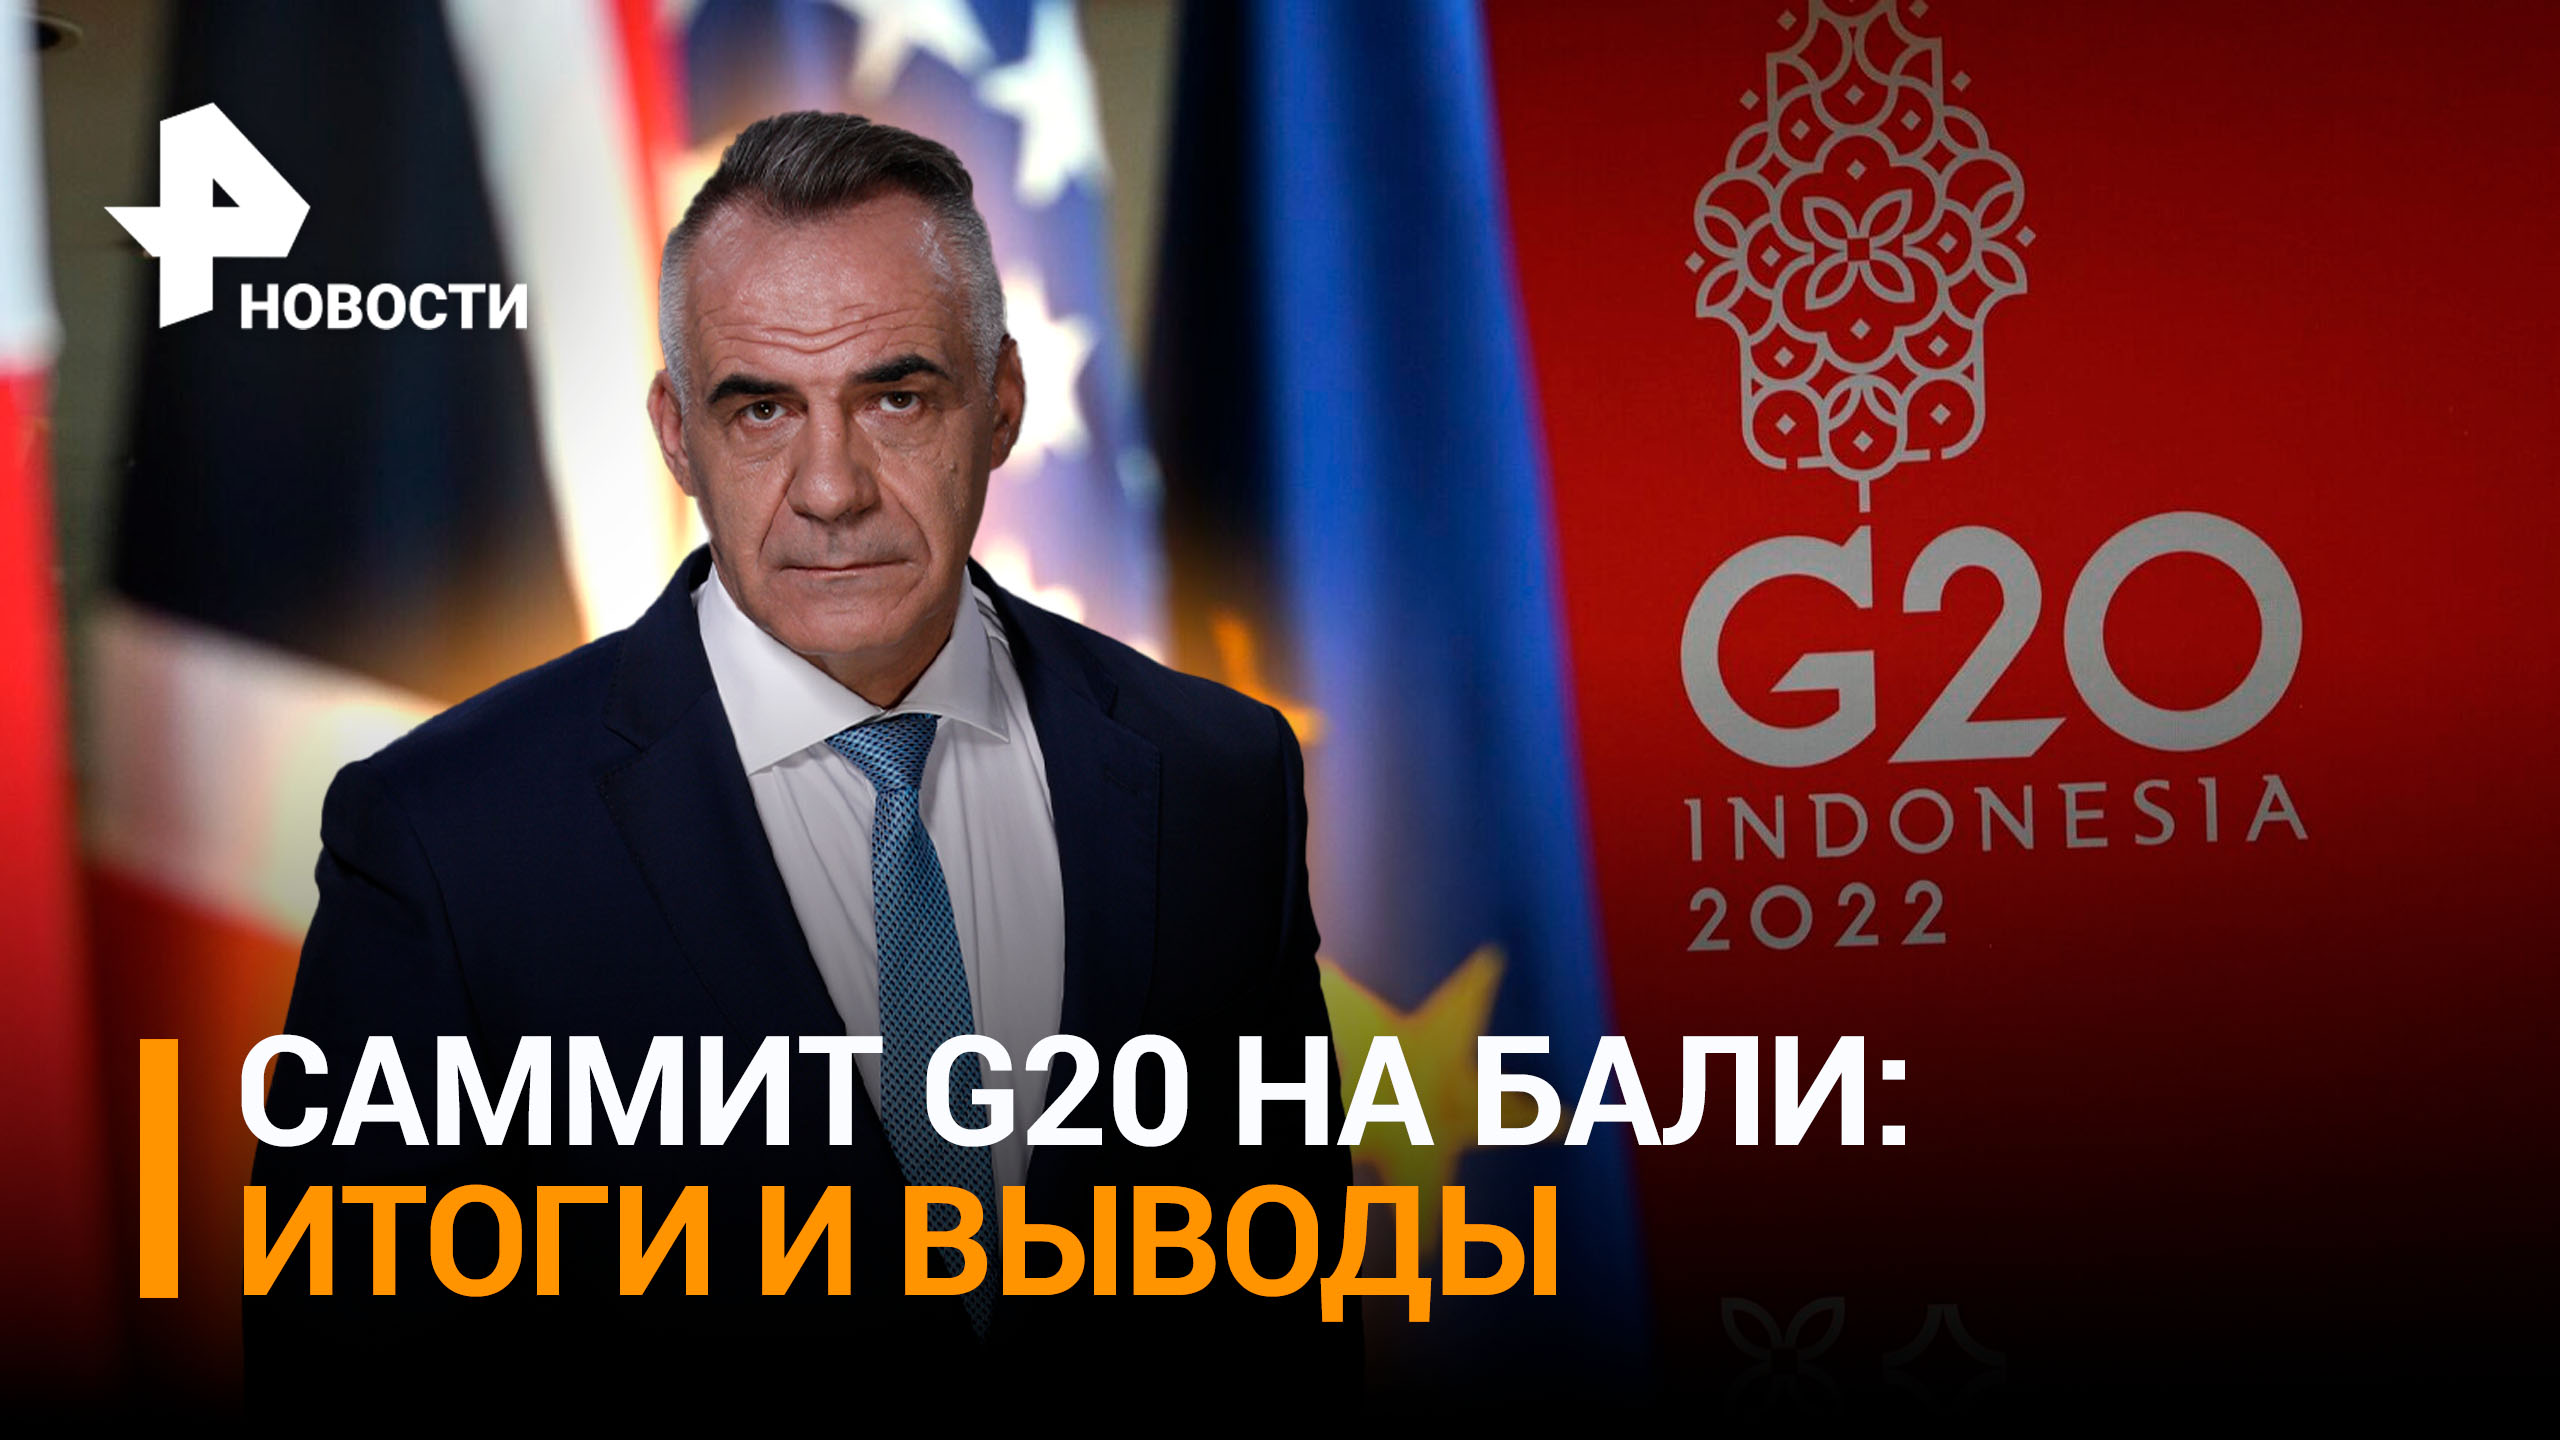 Саммит G20 показал, как мельчает современная политика / Итоги с Петром Марченко